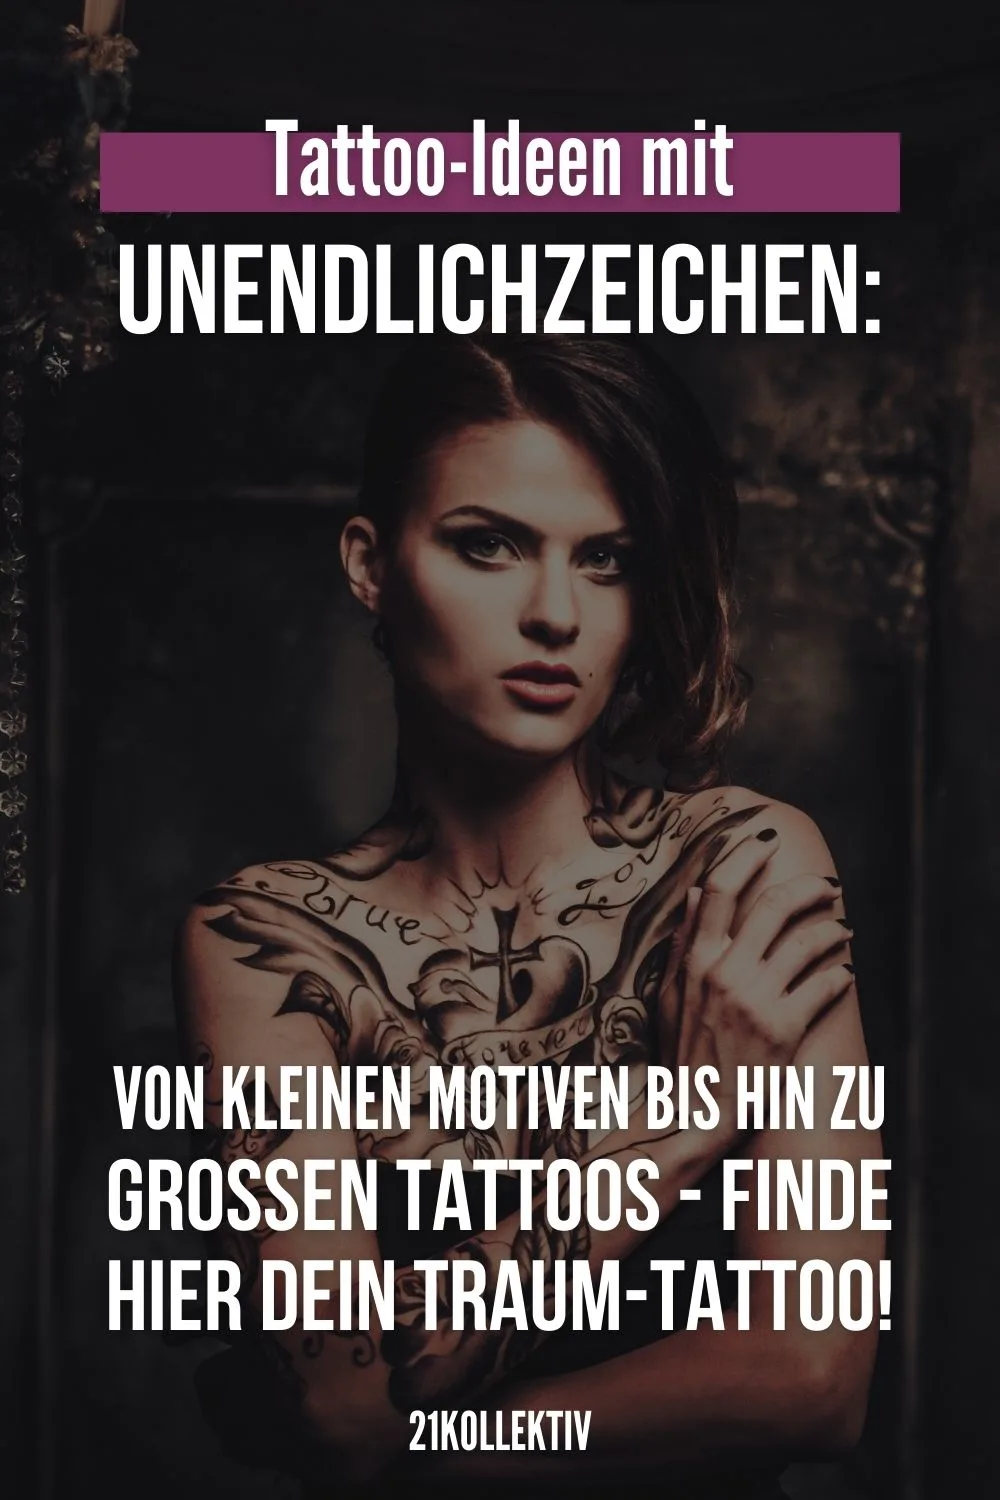 Tattoo-Ideen mit Unendlichzeichen: Von kleinen Motiven bis hin zu großen Tattoos - Finde hier dein Traum-Tattoo!